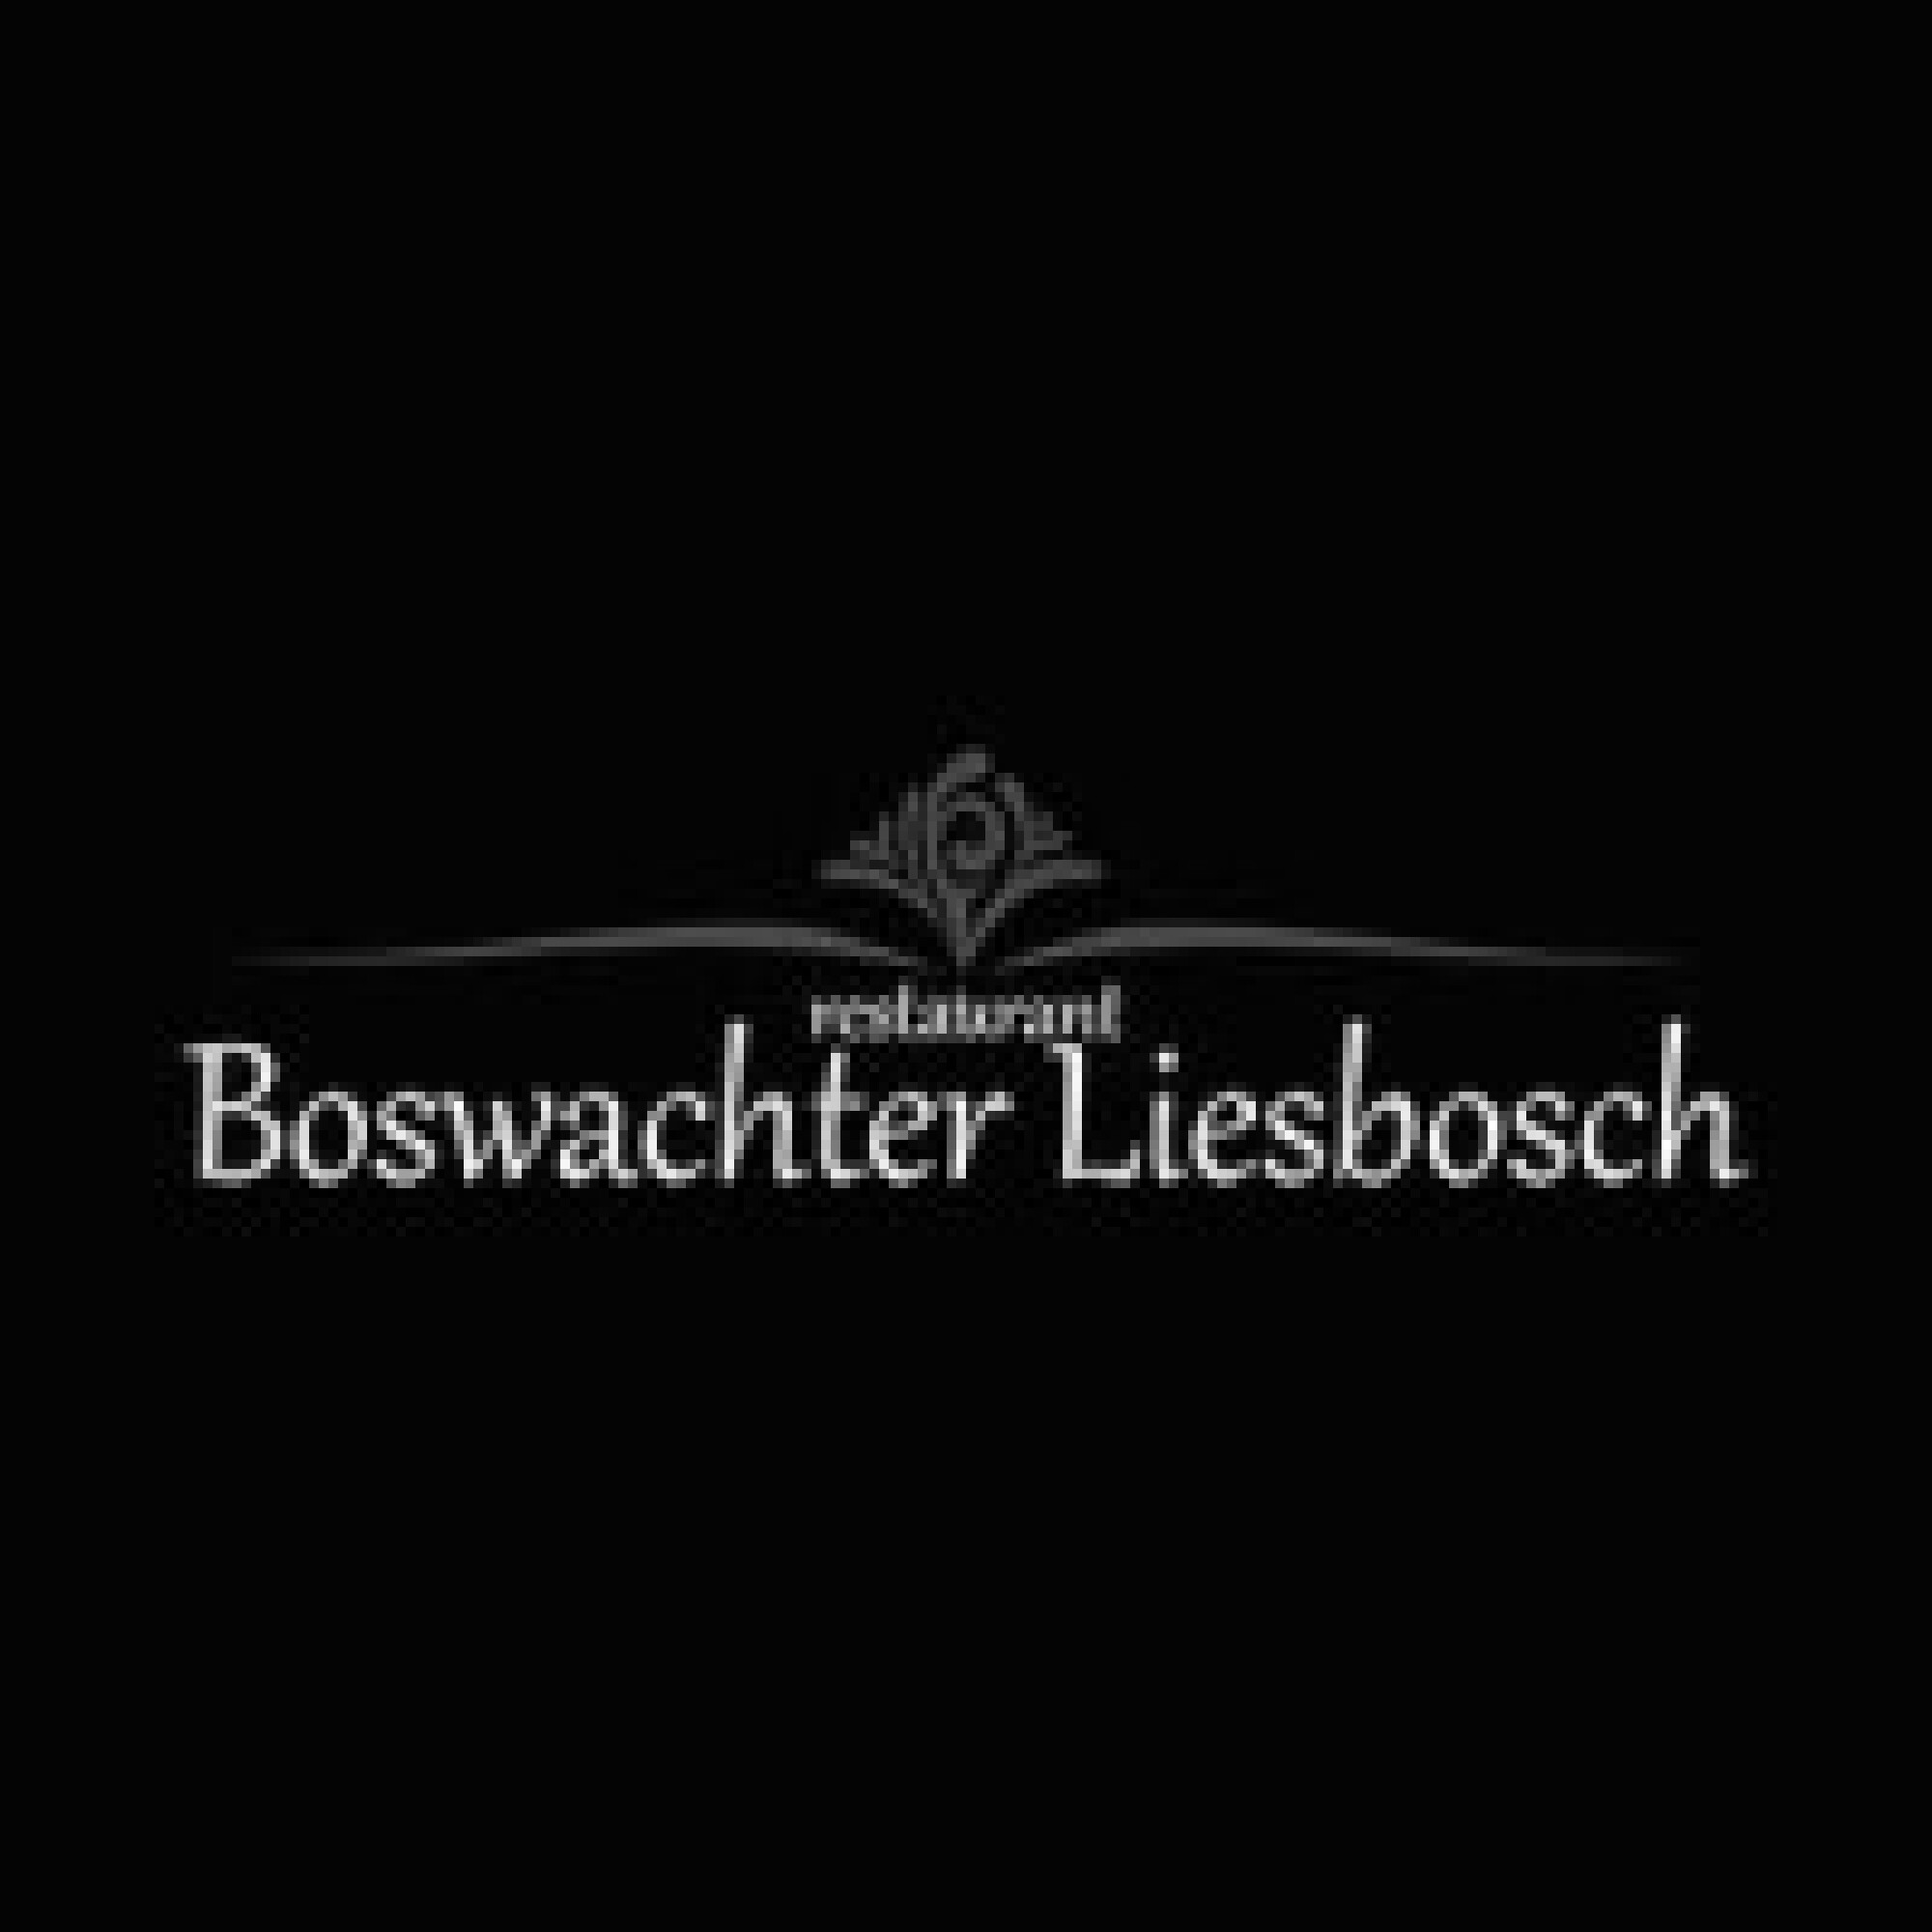 Boswachter Liesbosch